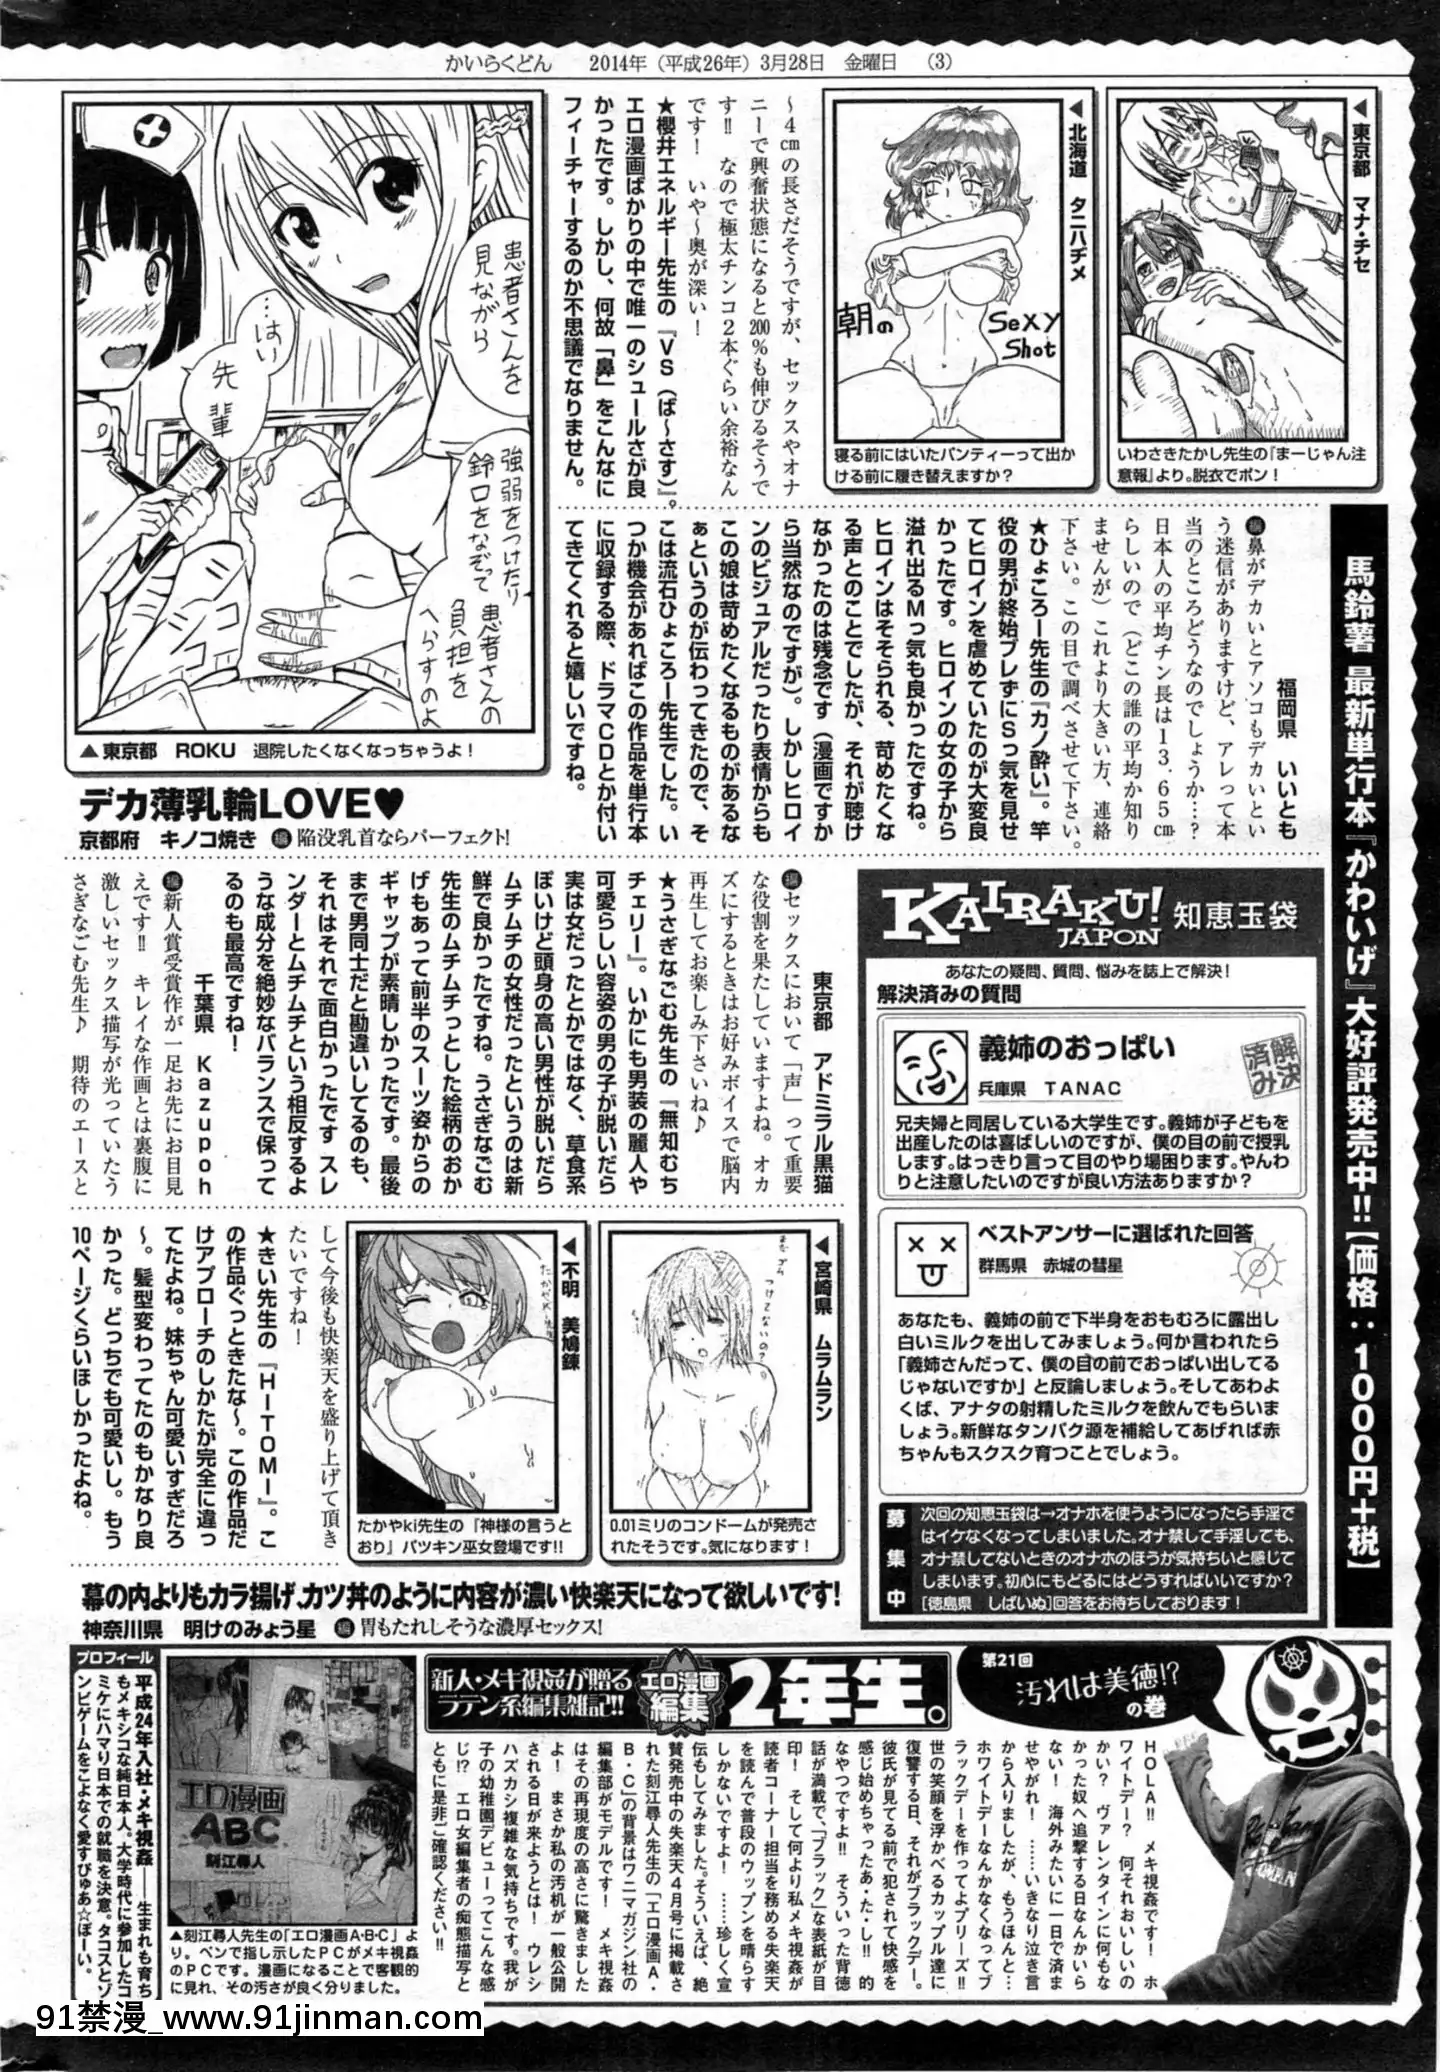 (Người lớn コ ミ ッ ク) [雑 志] COMIC Kuai Tian số tháng 5 năm 2014【black magician girl hentai】